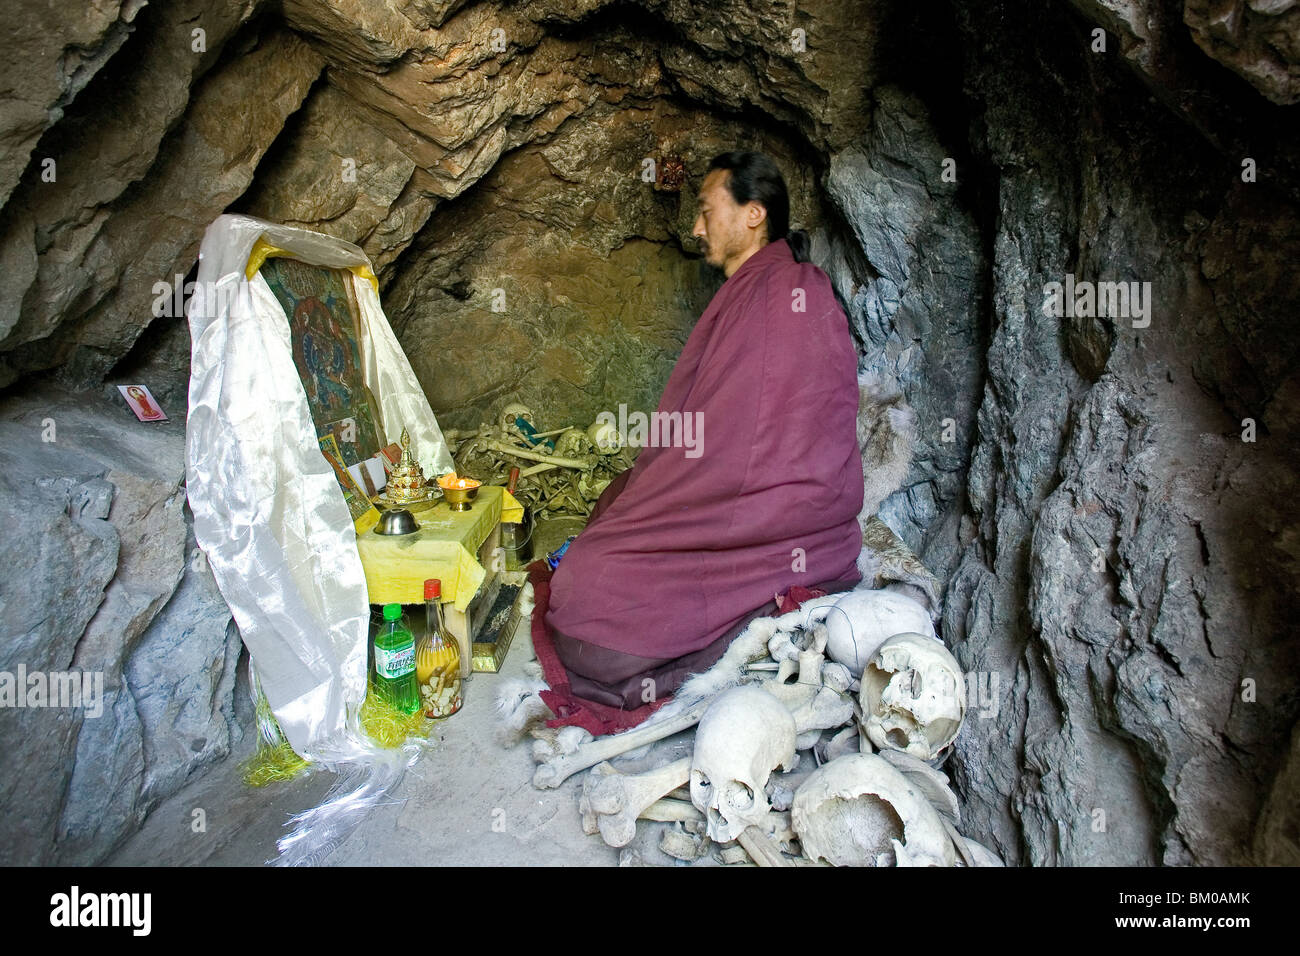 Grotte de l'Ermite, Wutai shan, montagne sacrée bouddhiste, province de Shanxi, Chine, Asie, solitaire, seul, solitaire, solo, ascétique, os de Banque D'Images